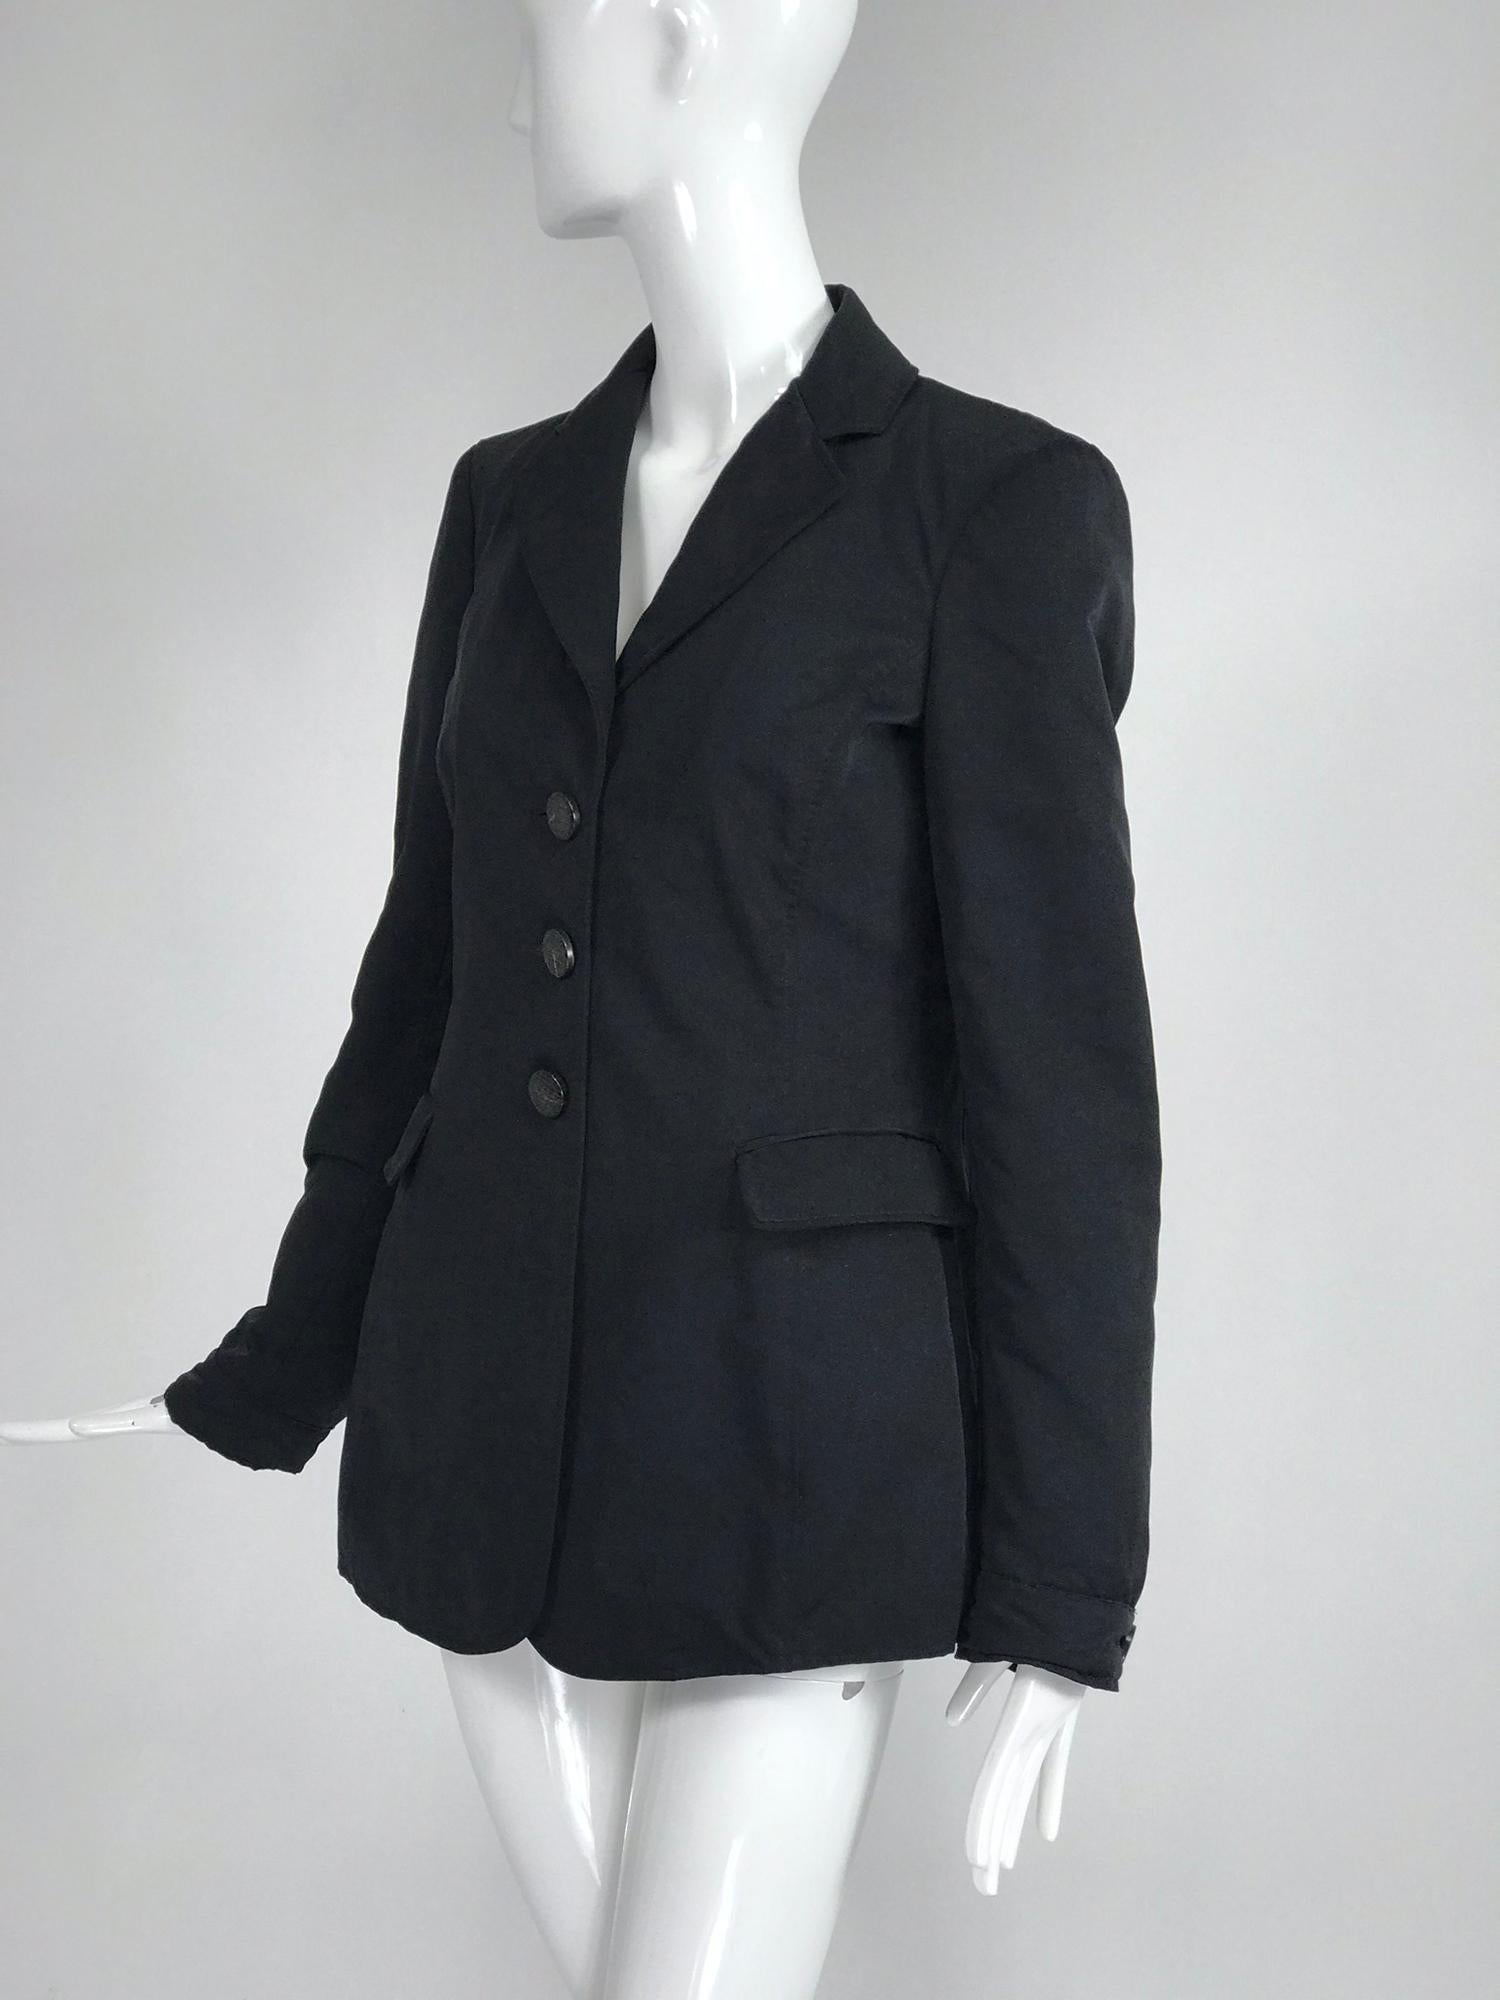 Giorgio Armani Collezioni Black Nylon Single Breasted Riding Jacket 3